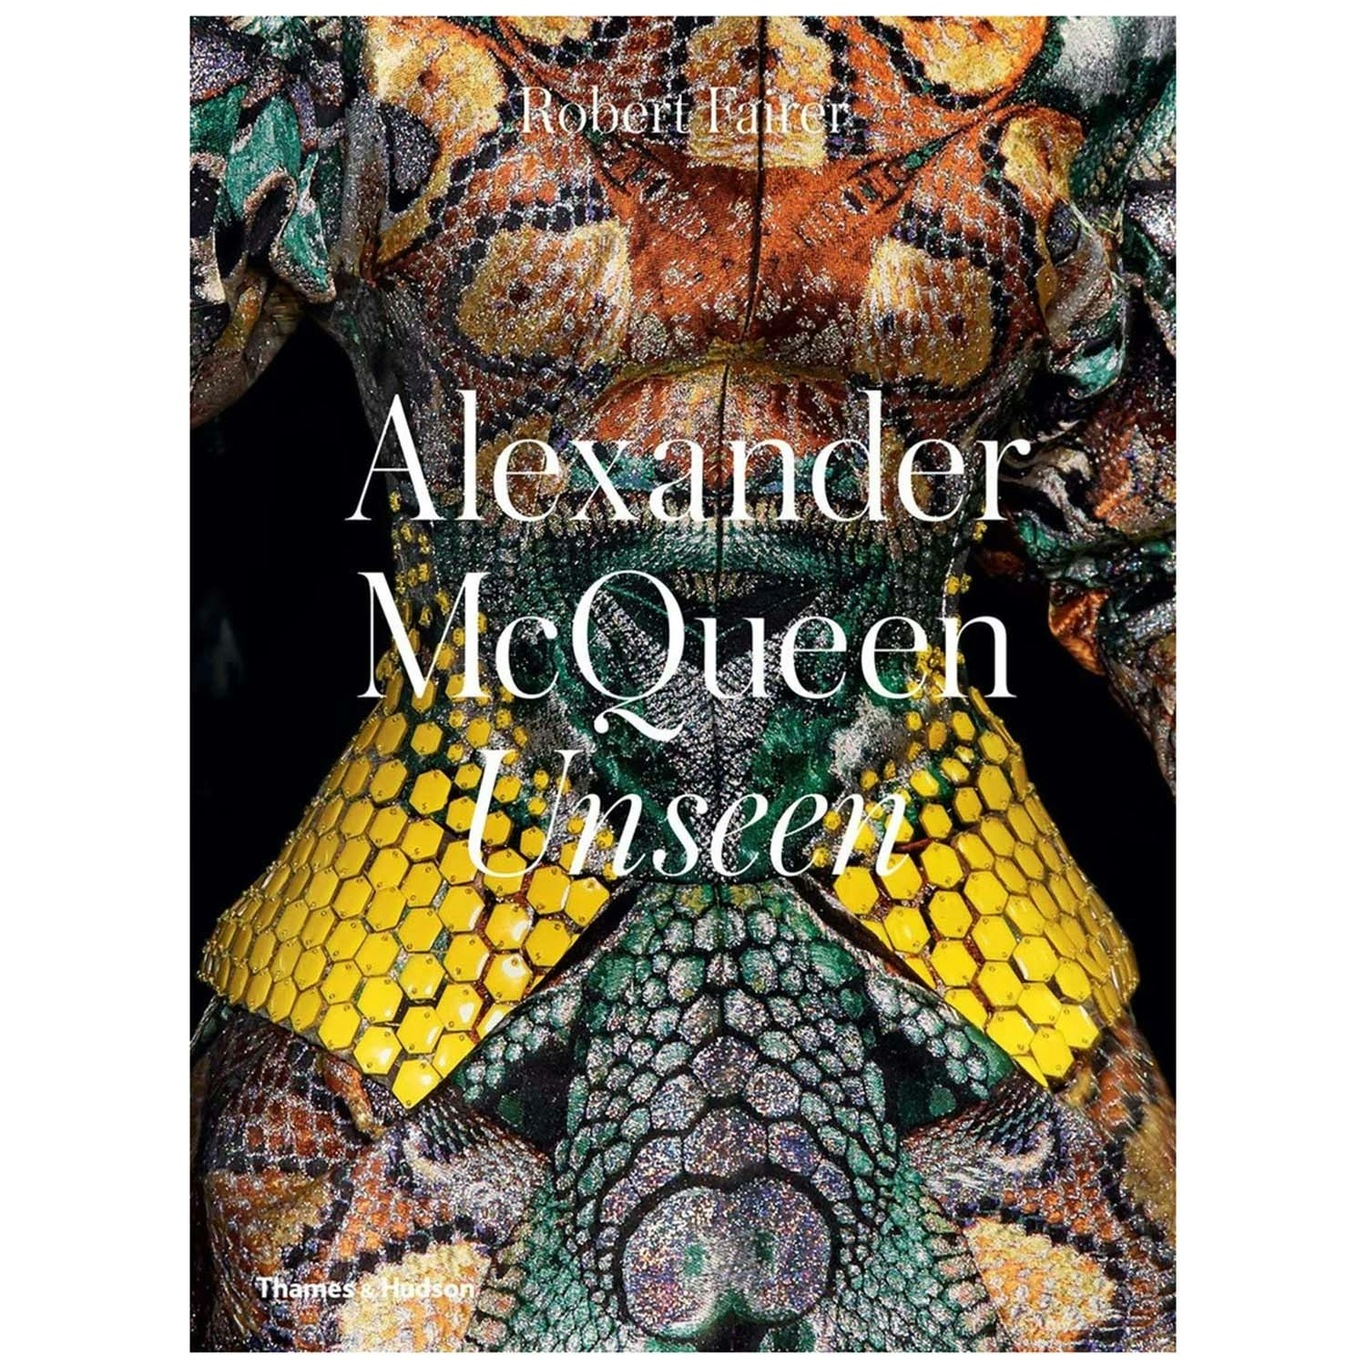 Alexander Mcqueen: Unseen Boek